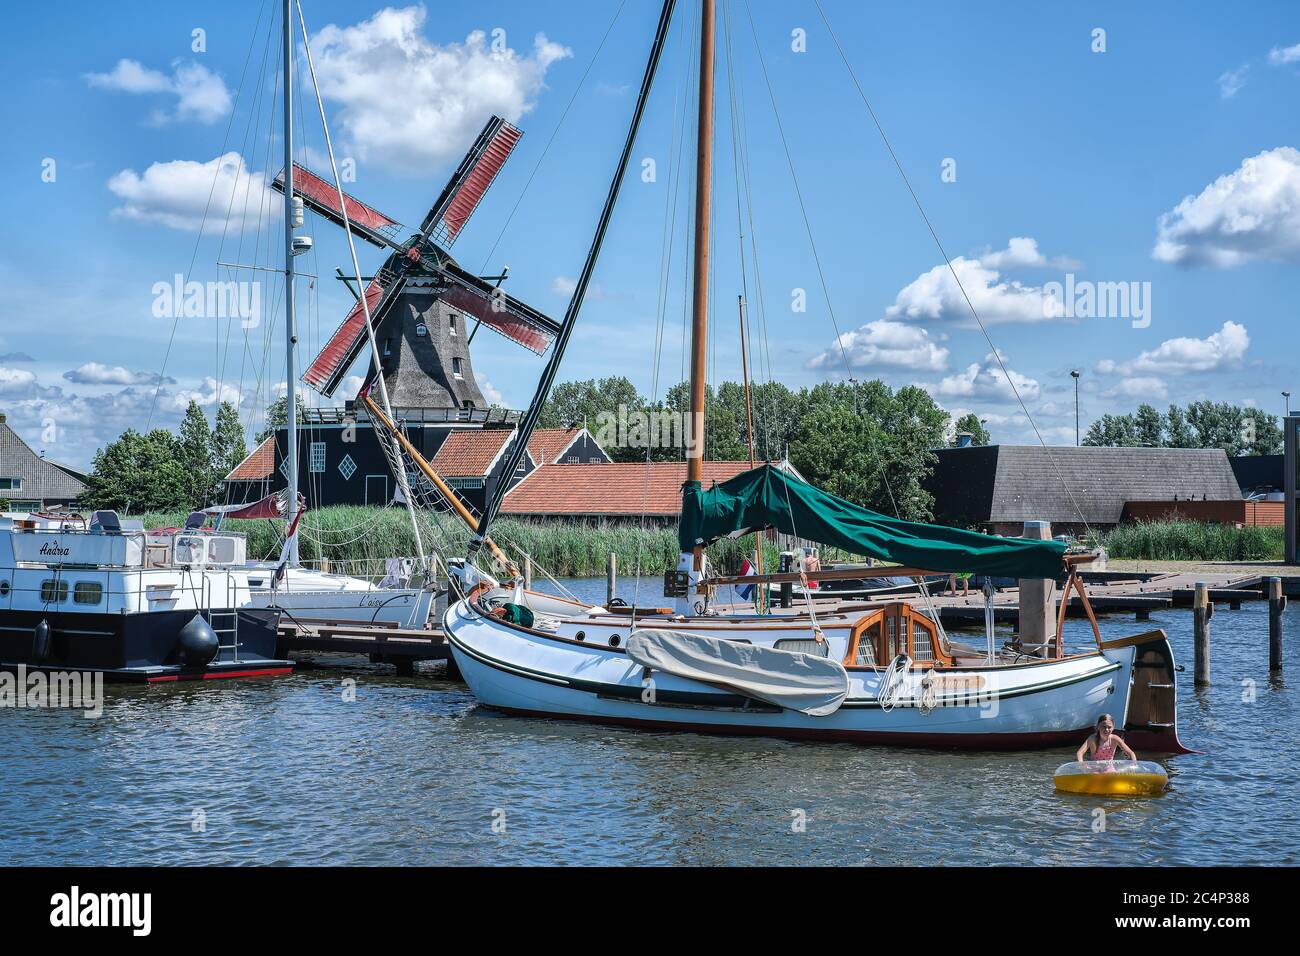 Europa, Paesi Bassi - Tour attraverso i canali di Friesland, un molo con una barca a vela, sullo sfondo un mulino a vento tradizionale Foto Stock